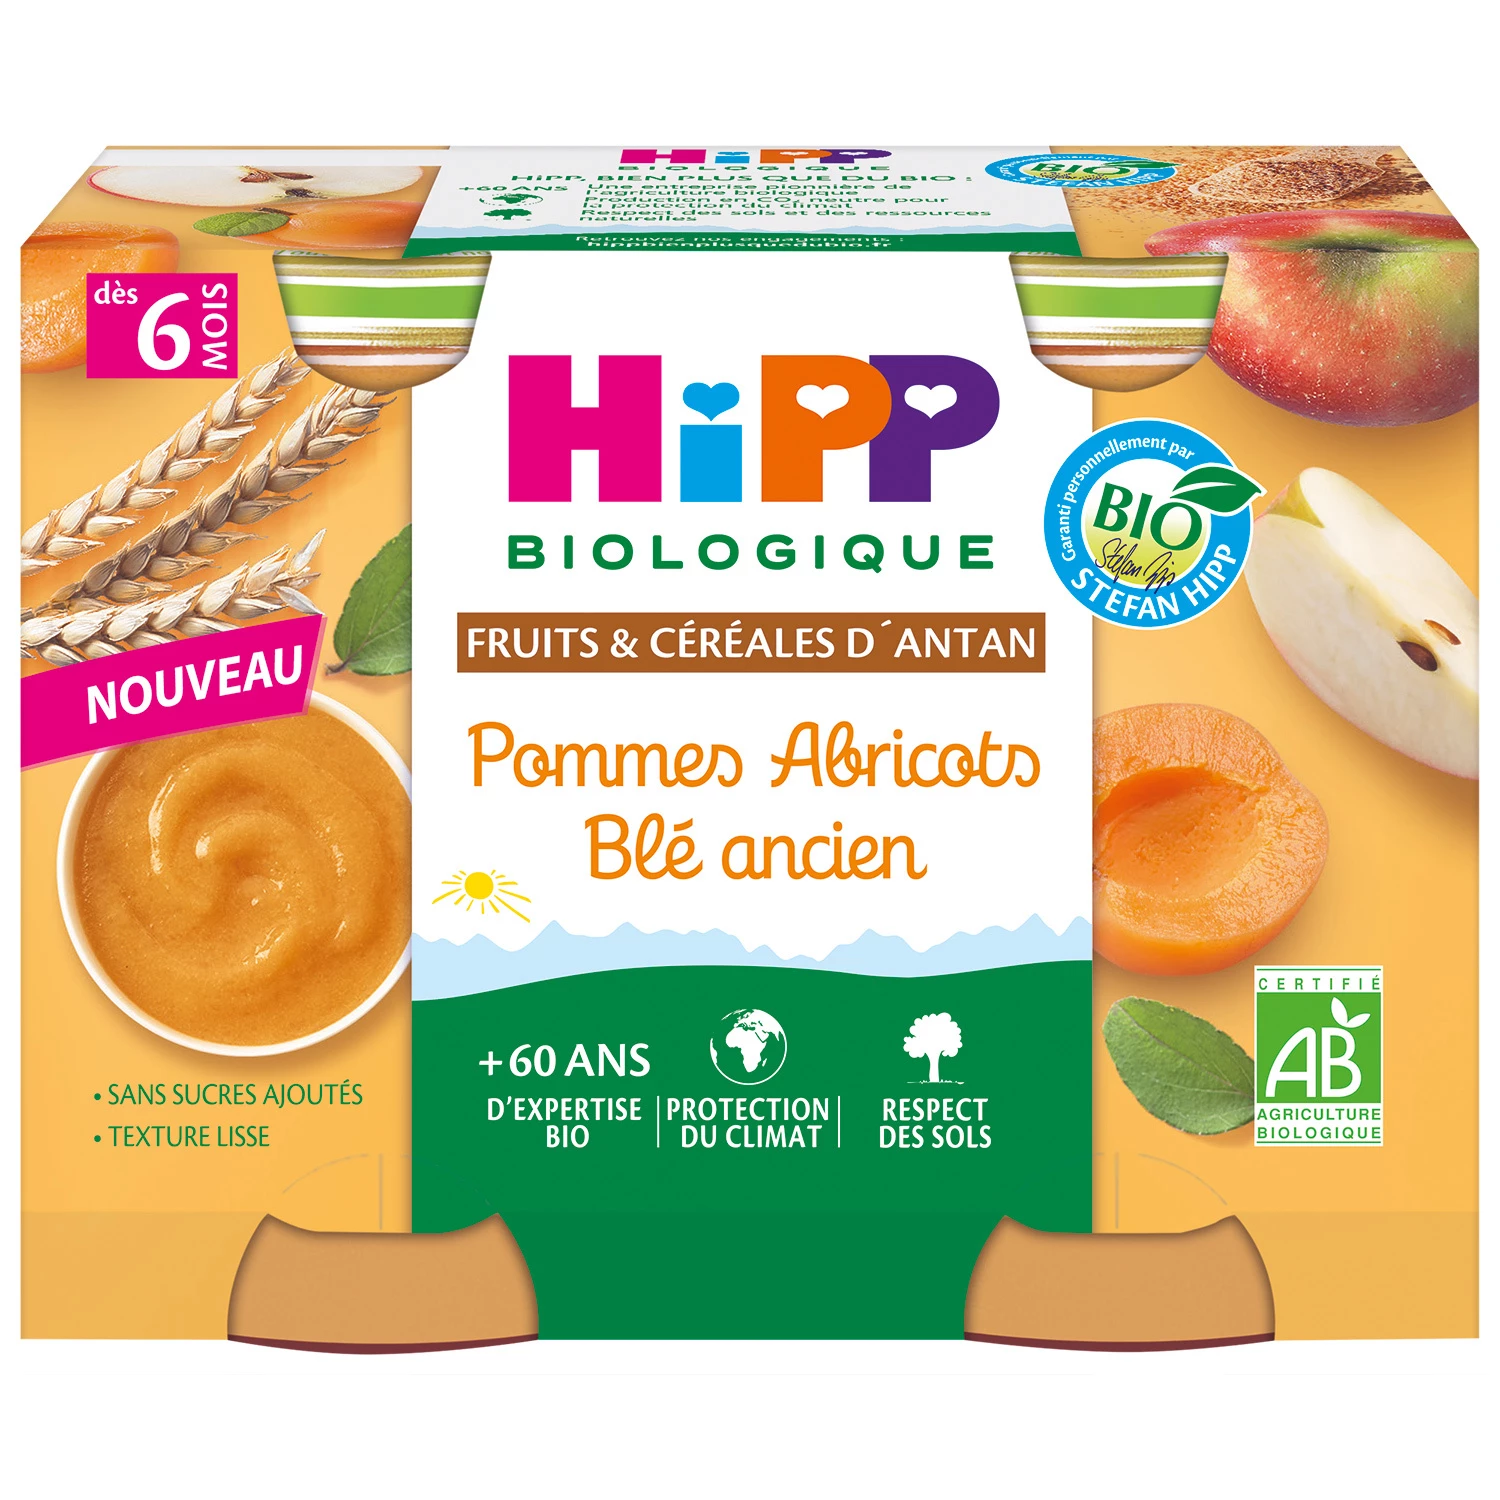 Petit pot pommes abricots blé ancien Bio dès 6 mois , 2x190g, HIPP BioLOGIQUE